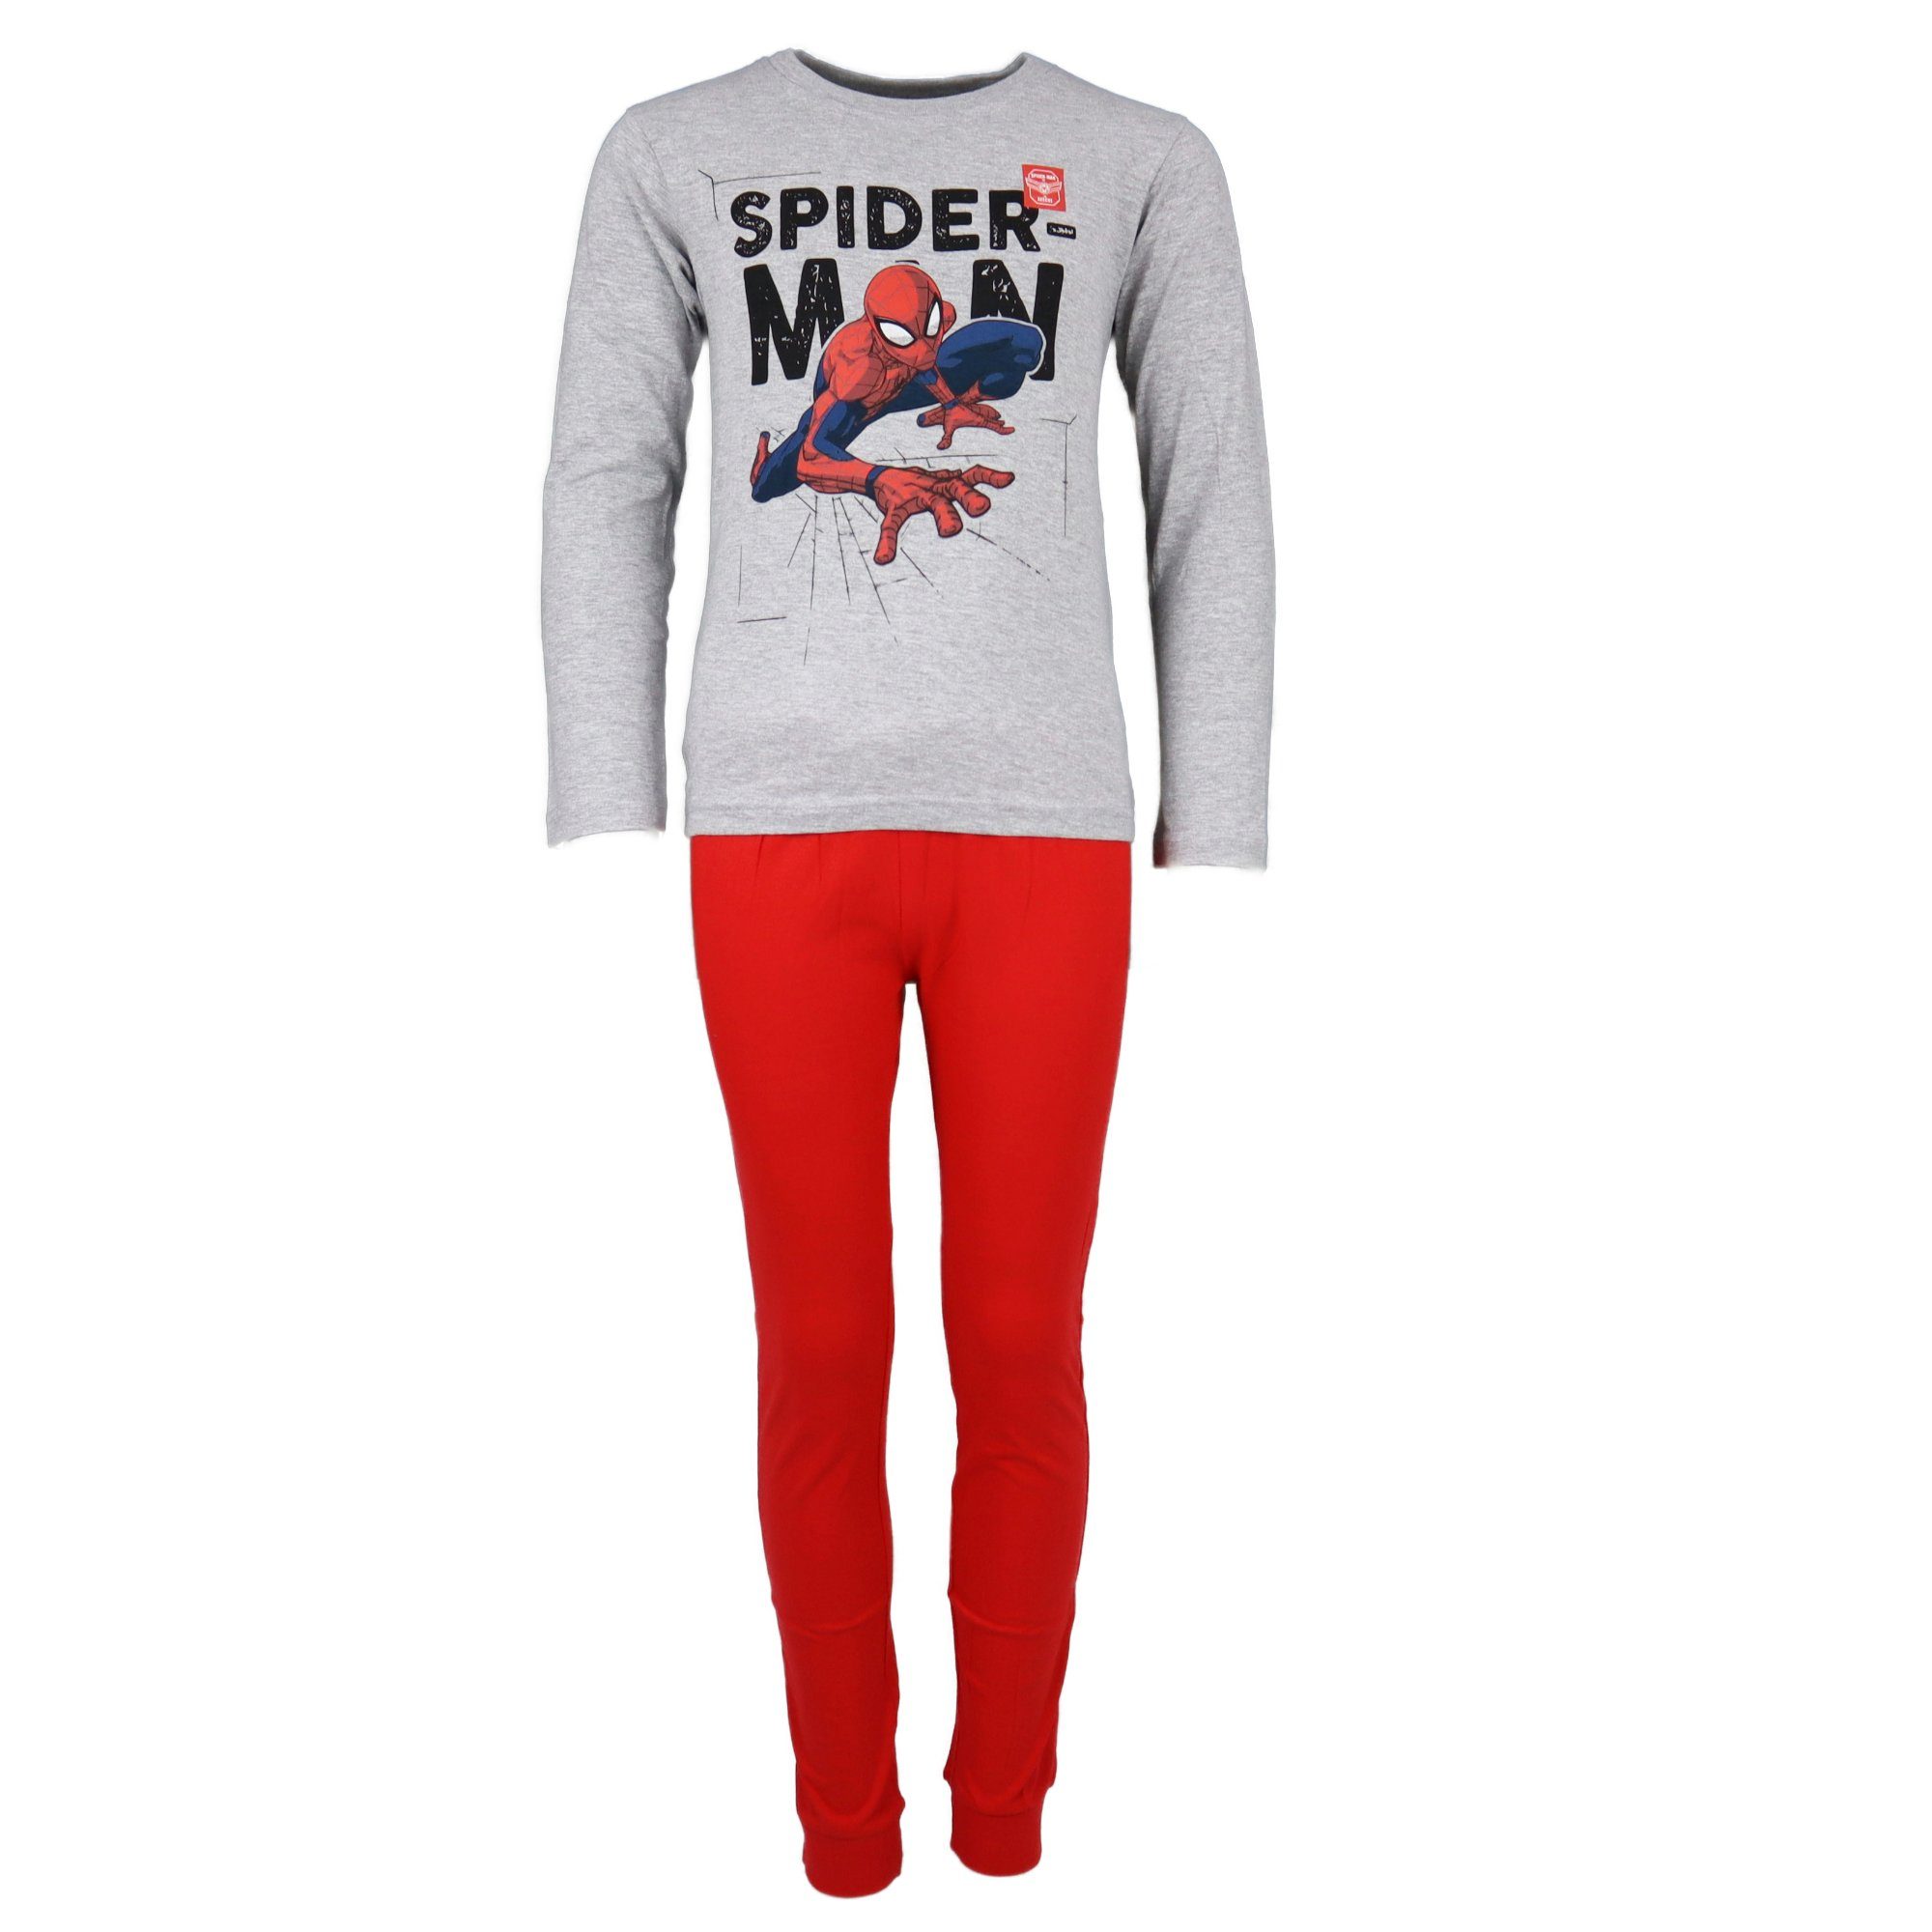 Wäsche/Bademode Nachtwäsche MARVEL Schlafanzug Spiderman Kinder Pyjama Gr. 104 bis 134, Weiß, Grau